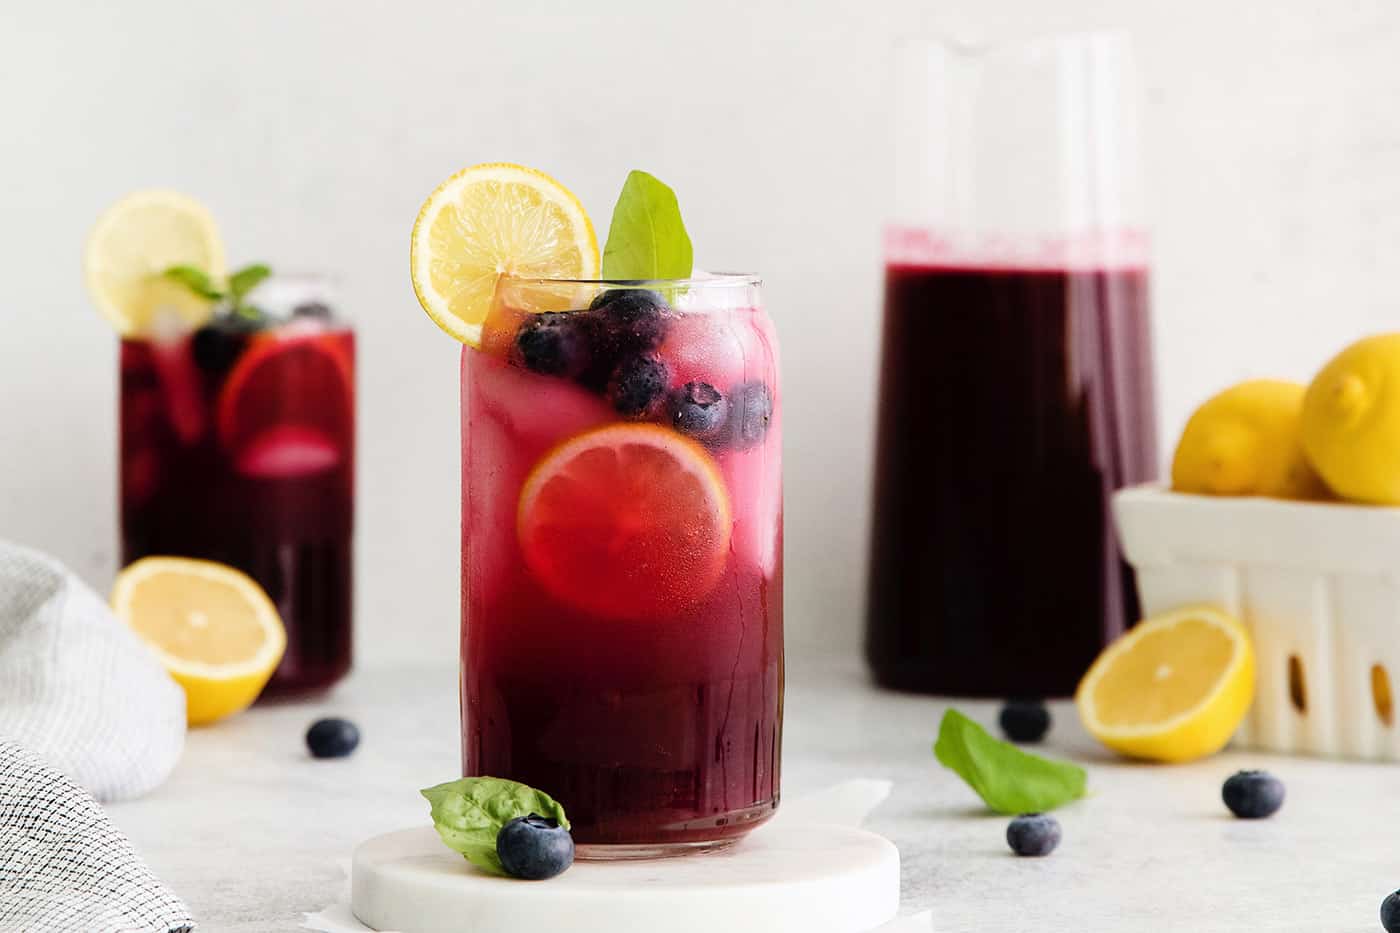 Two glasses of blueberry basil lemonade